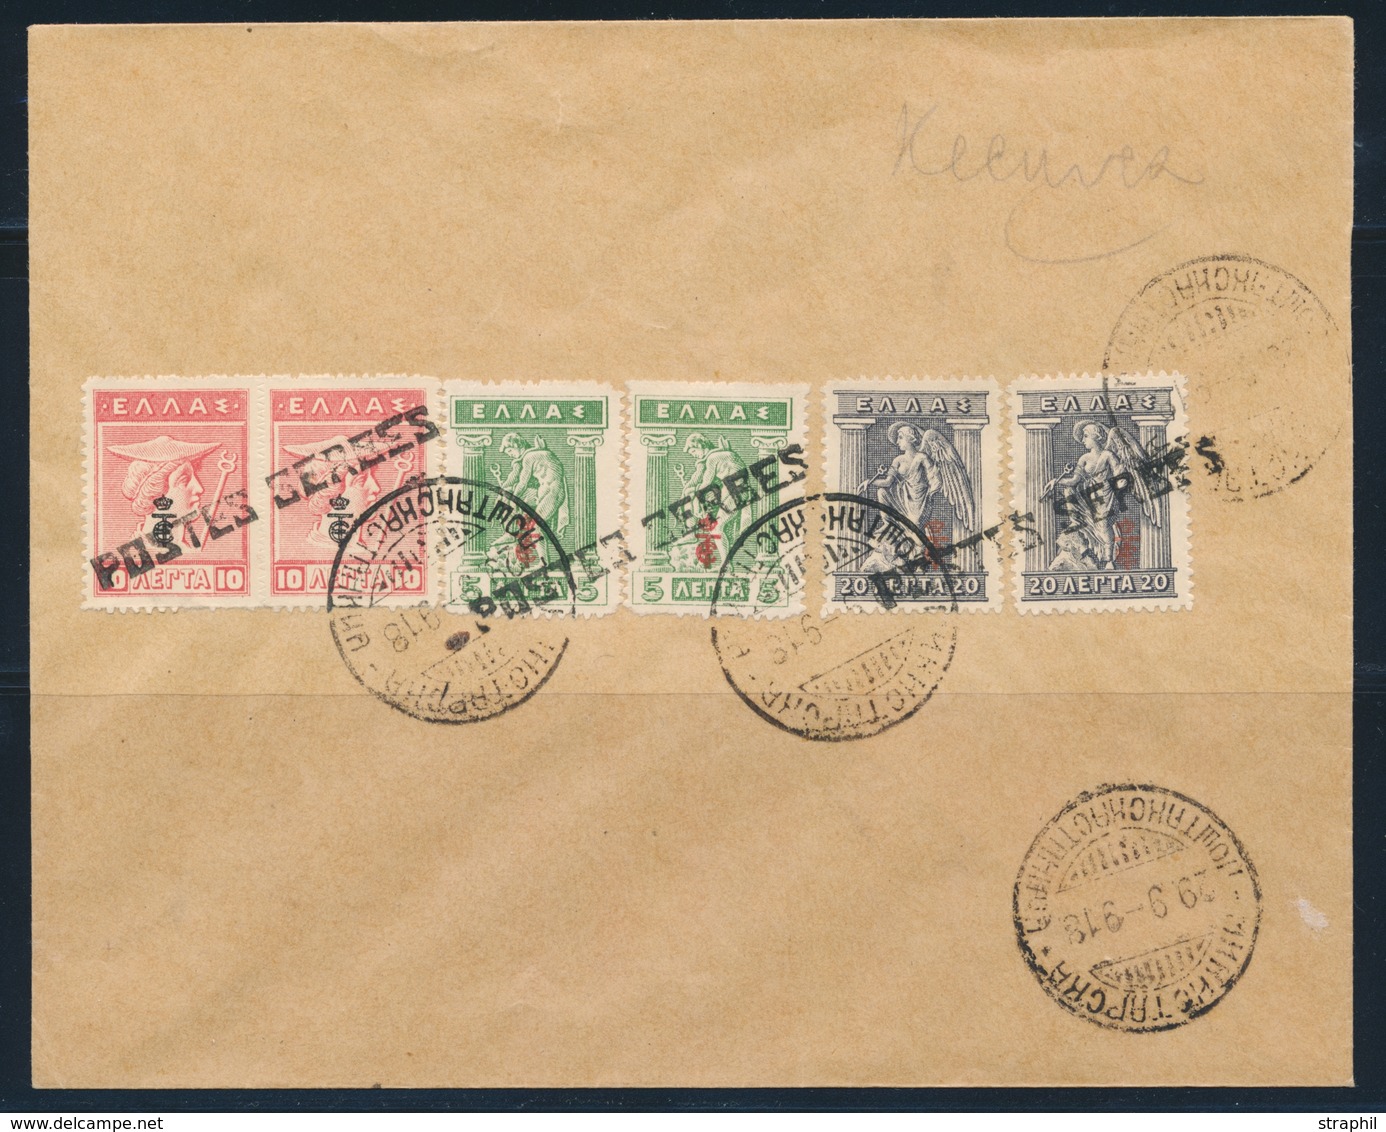 L POSTES SERBES - L - Pli Du 29/9/1918 - Afft 6 T.  - TB - Guerre (timbres De)